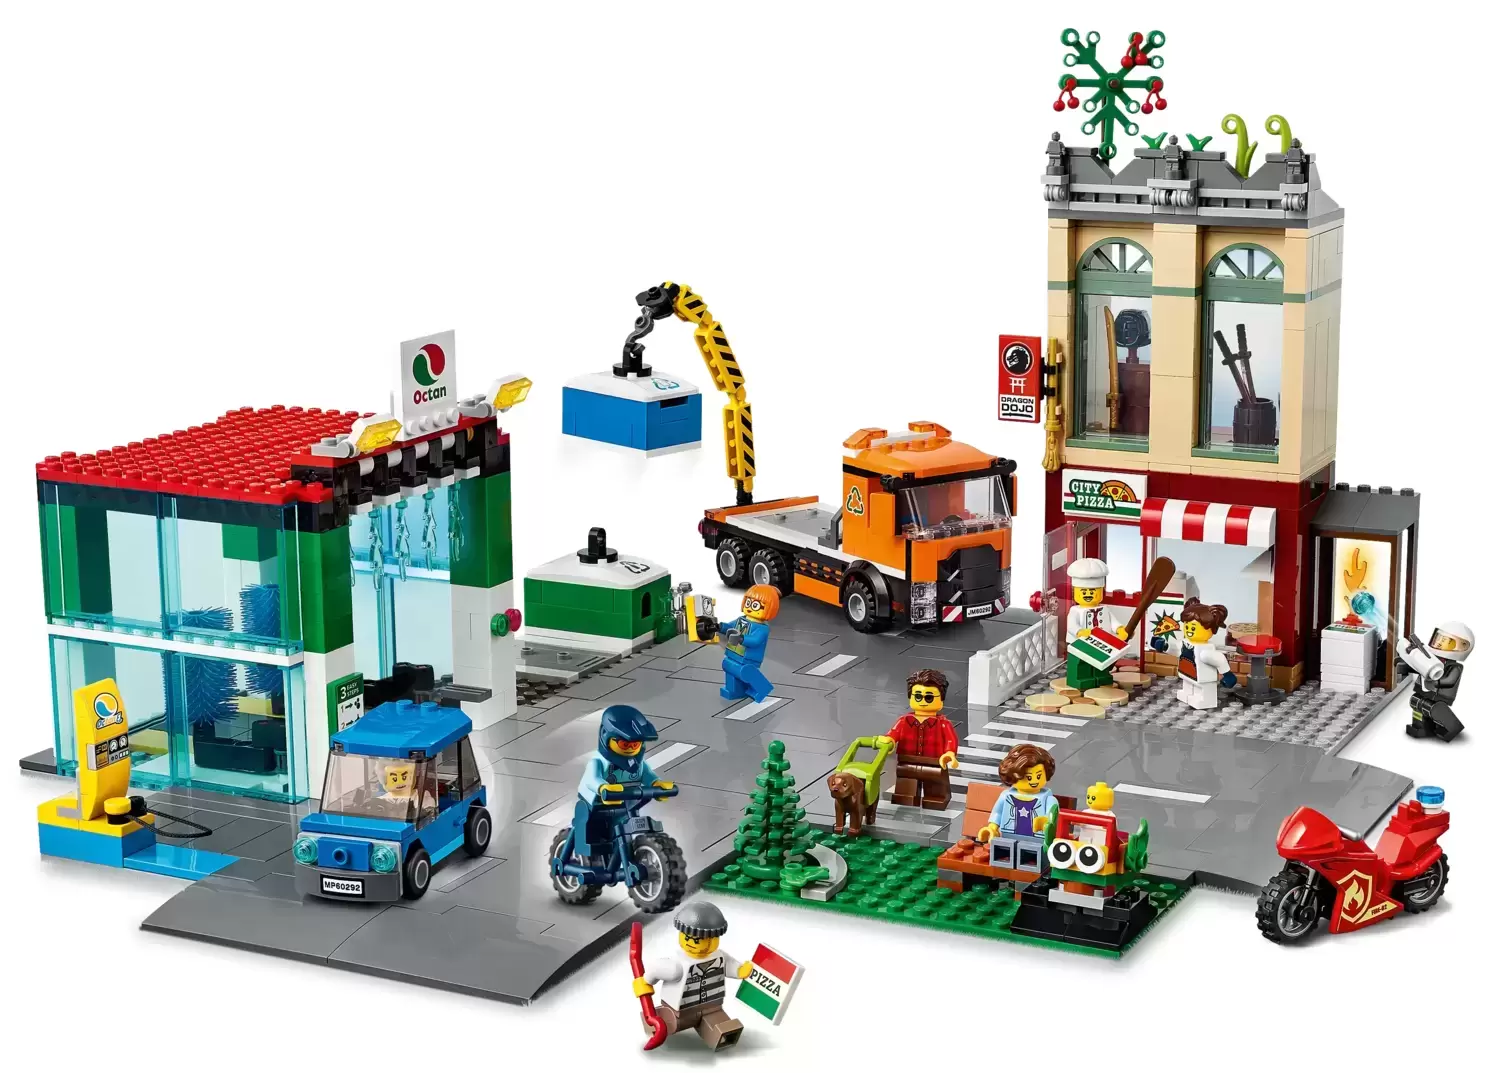 LEGO CITY - Town Center